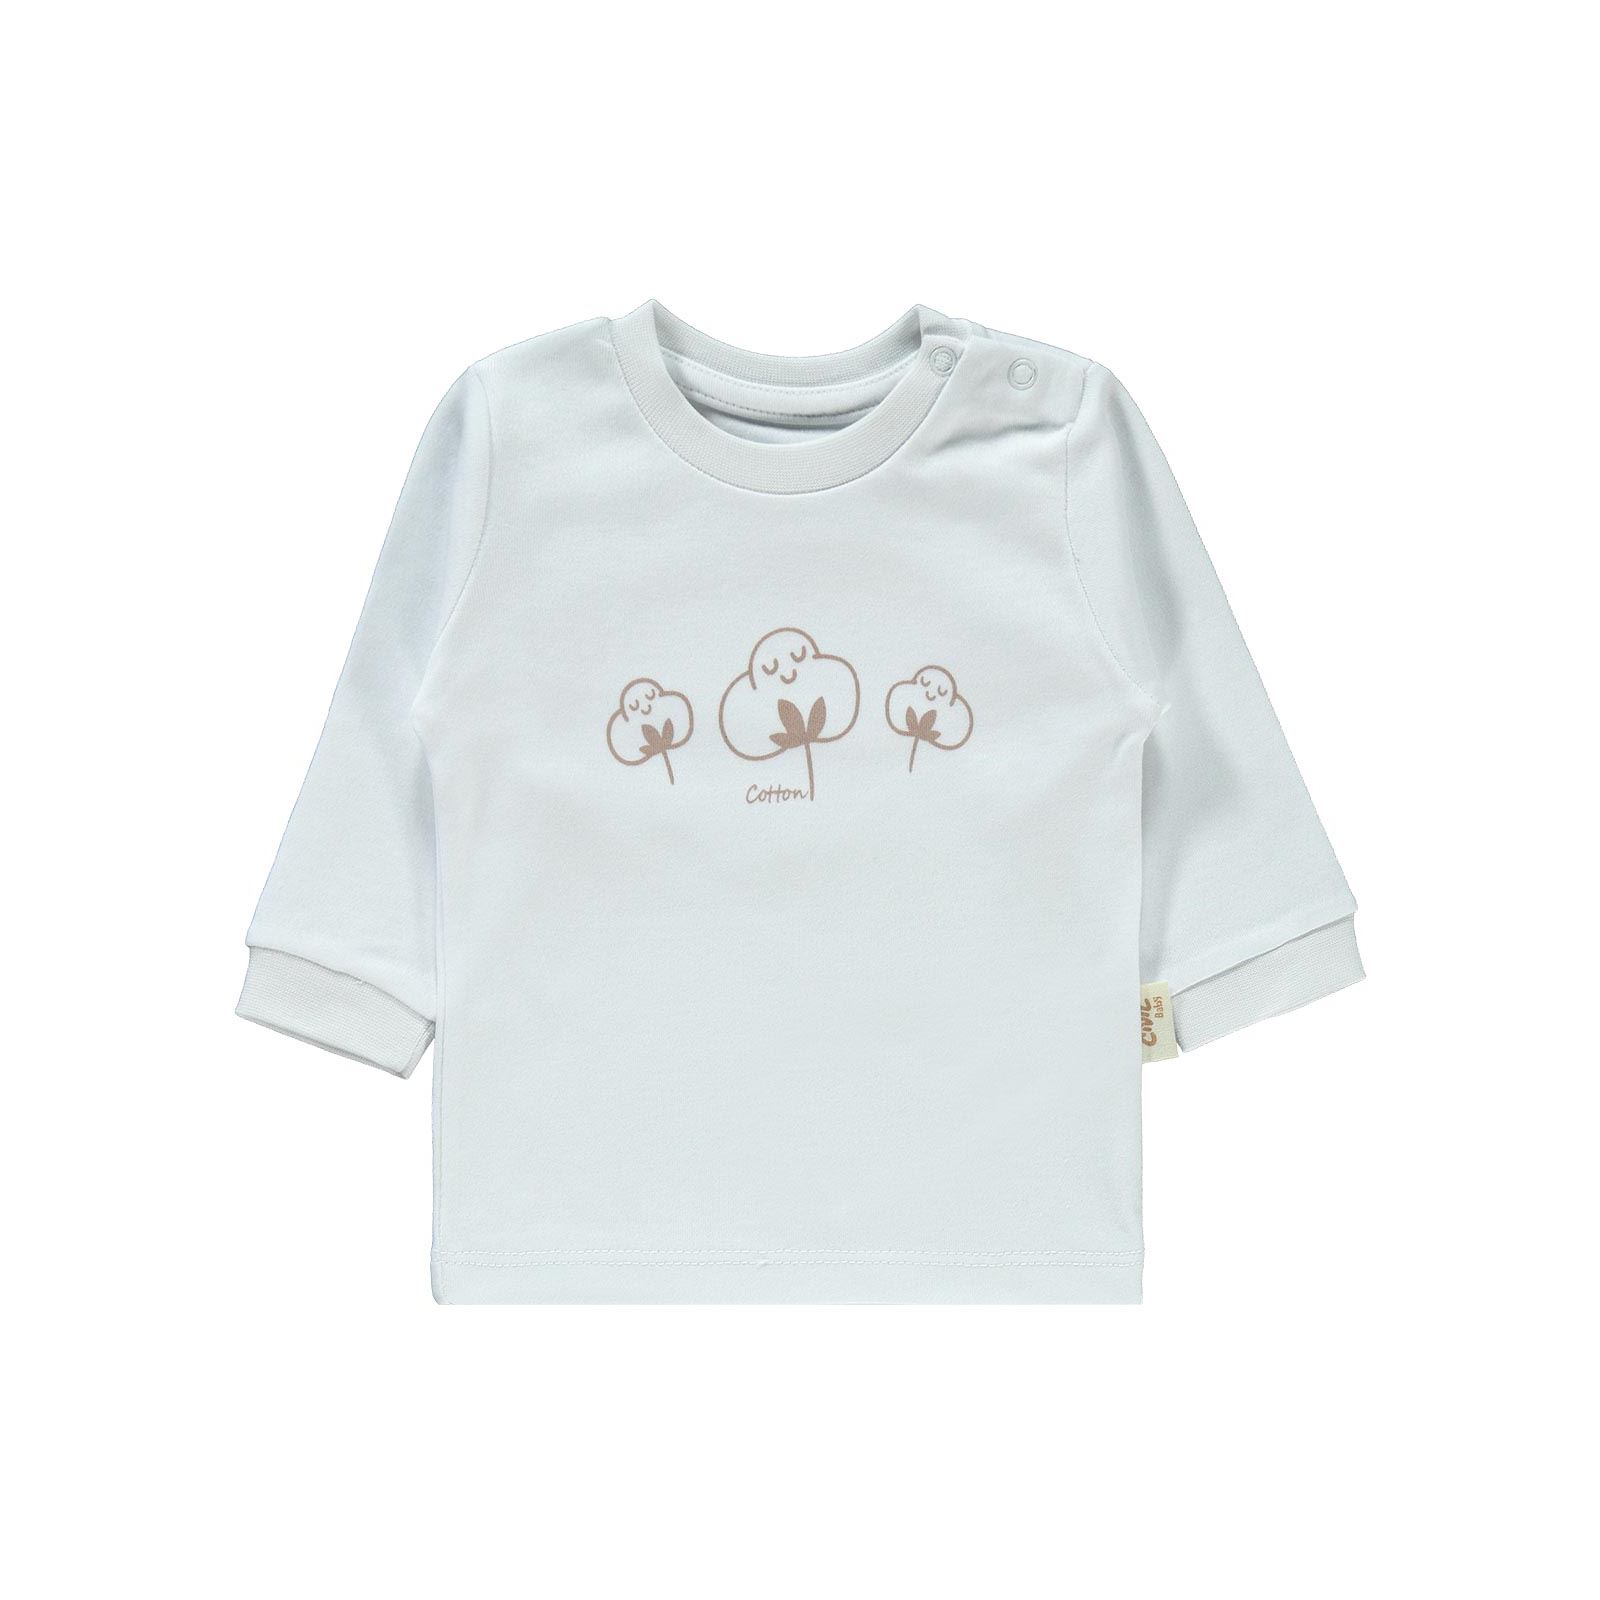 Civil Baby Bebek Organik Pijama Takımı 1-9 Ay Beyaz